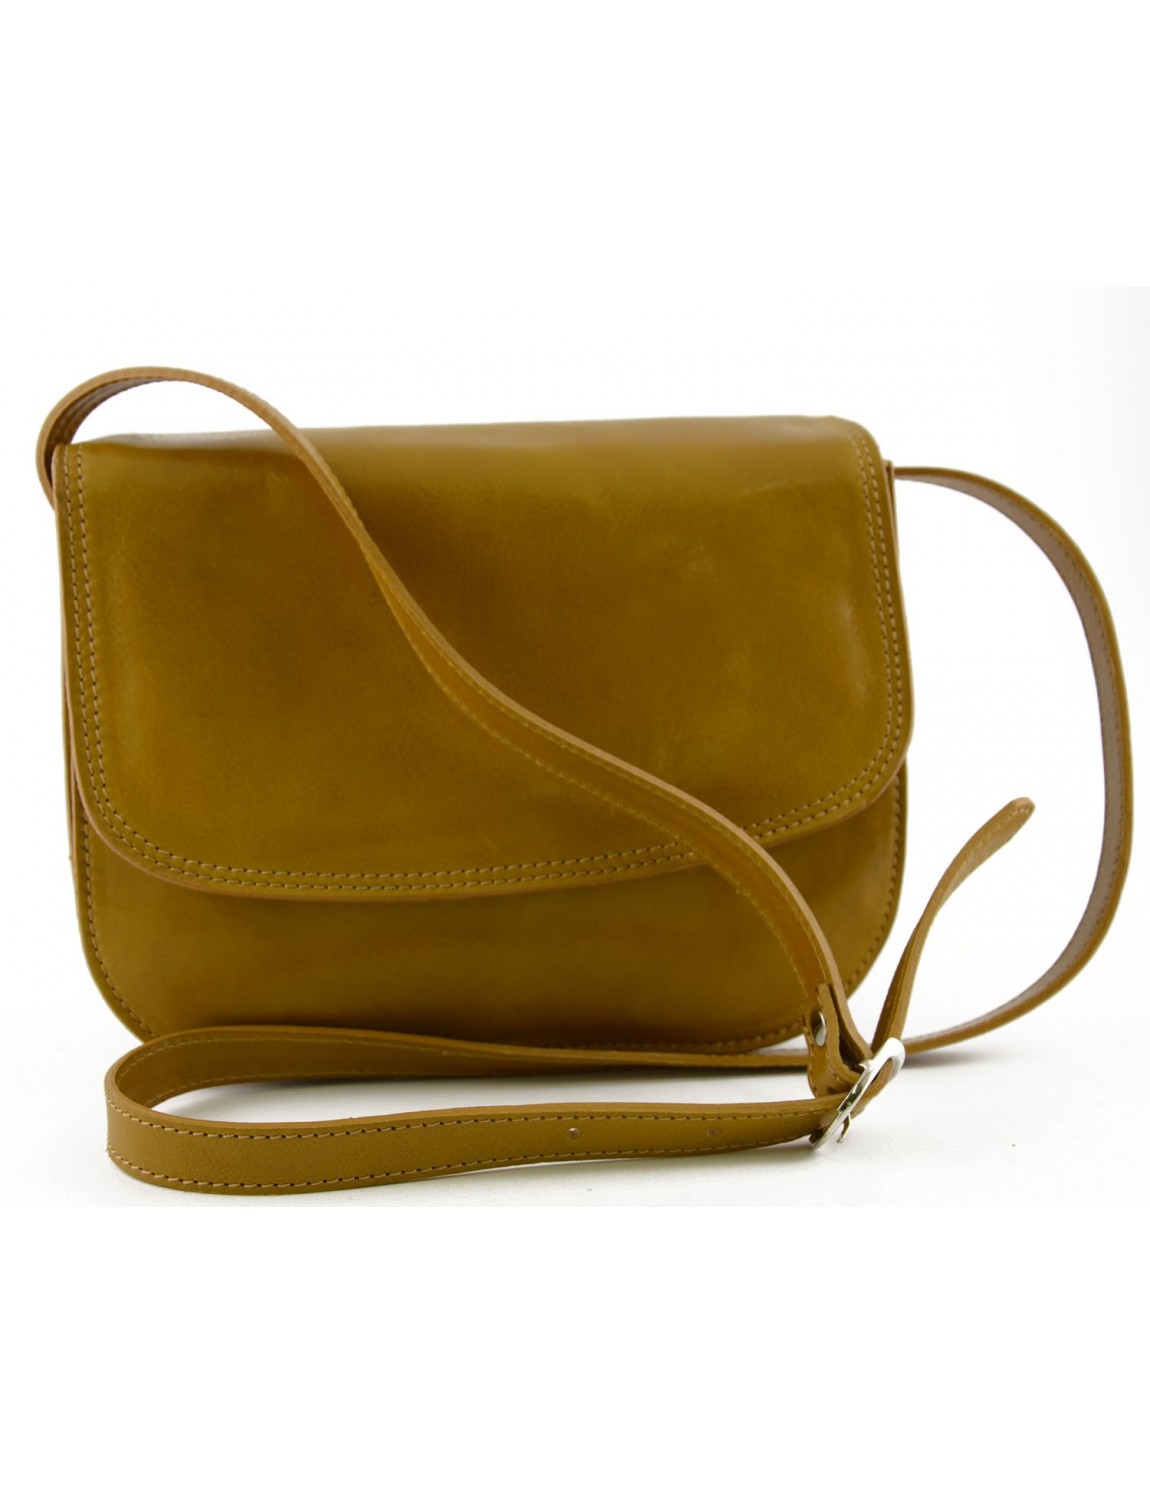 Shoulder Handbags With Compartments | IQS Executive